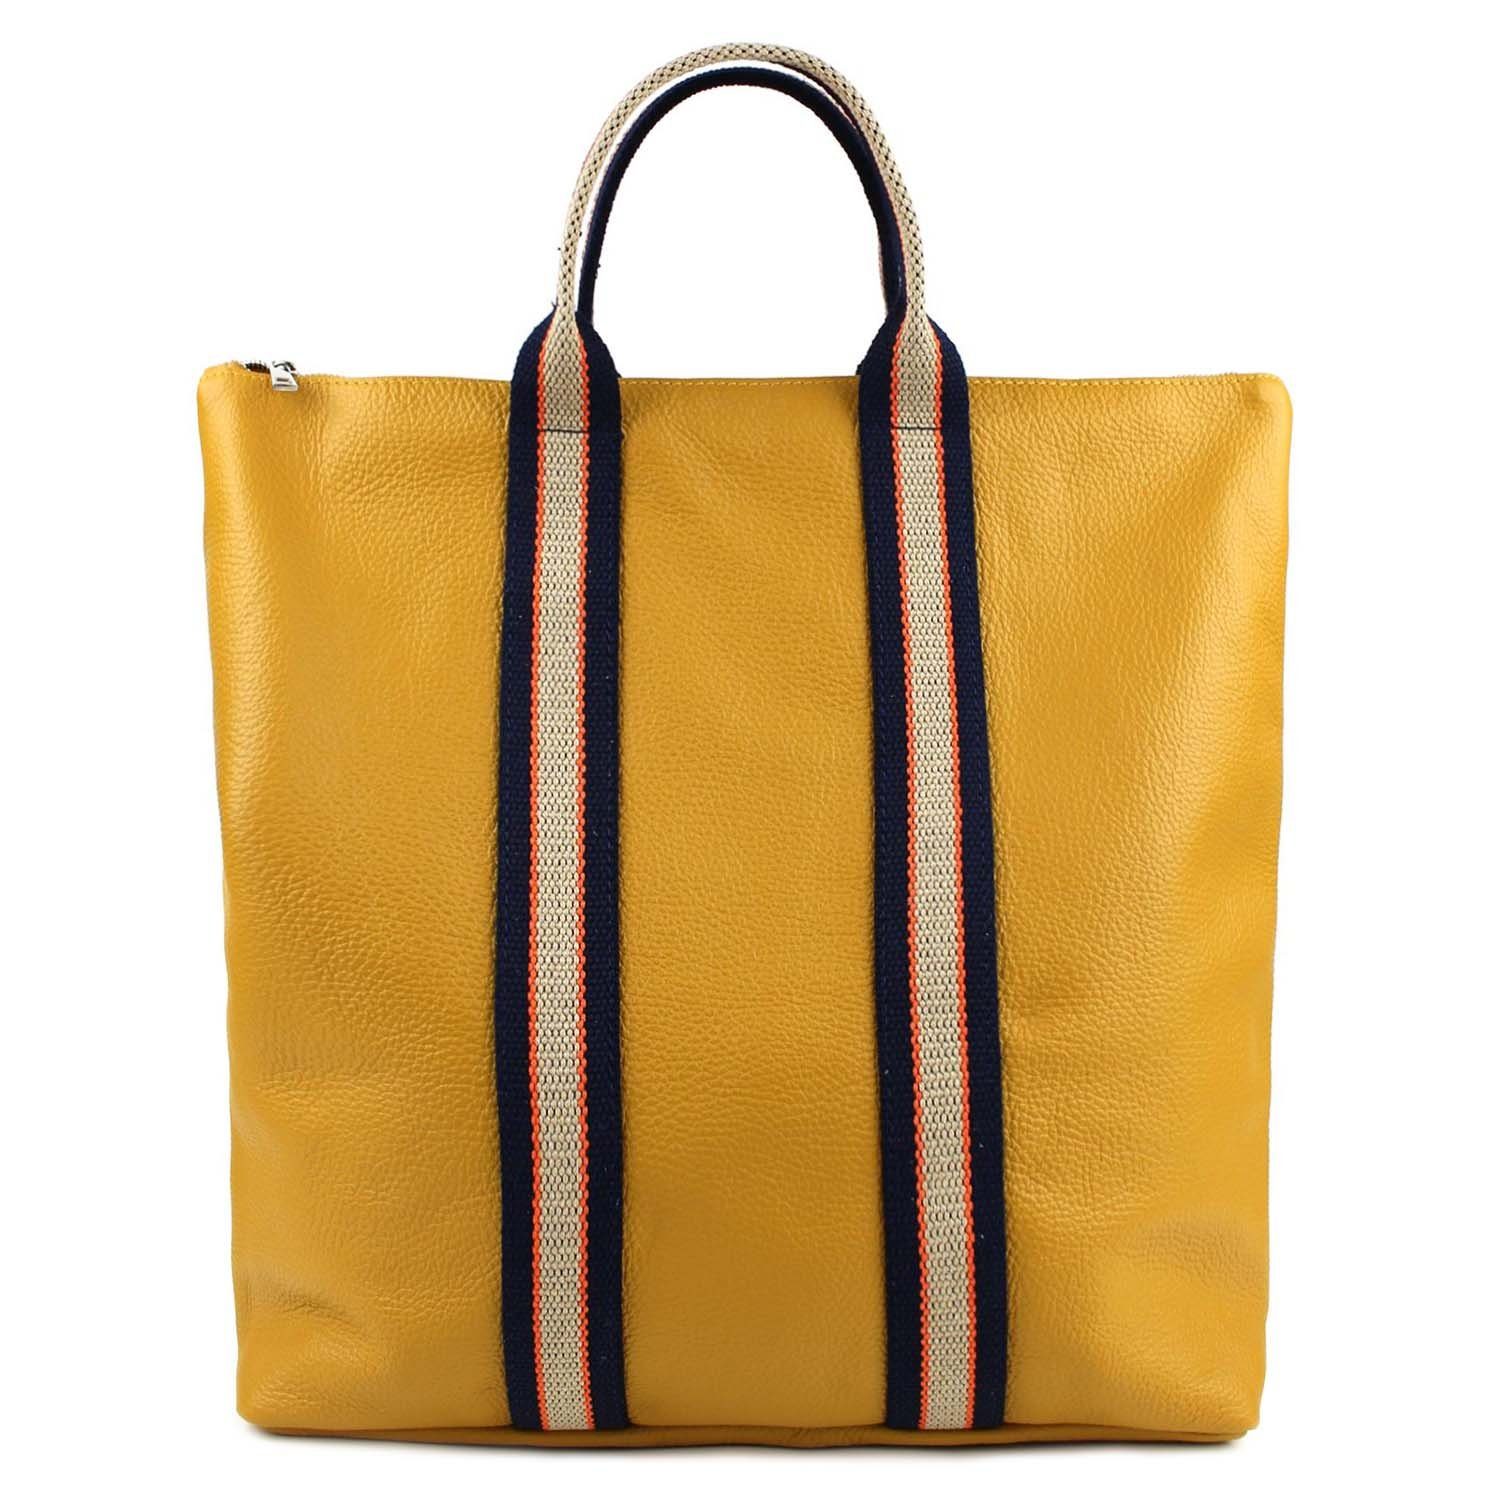 ITALYSHOP24 Rucksack Made in Italy Damen Leder Rucksack Schultertasche, als  Umhängetasche & Handtasche tragbar, Shopper